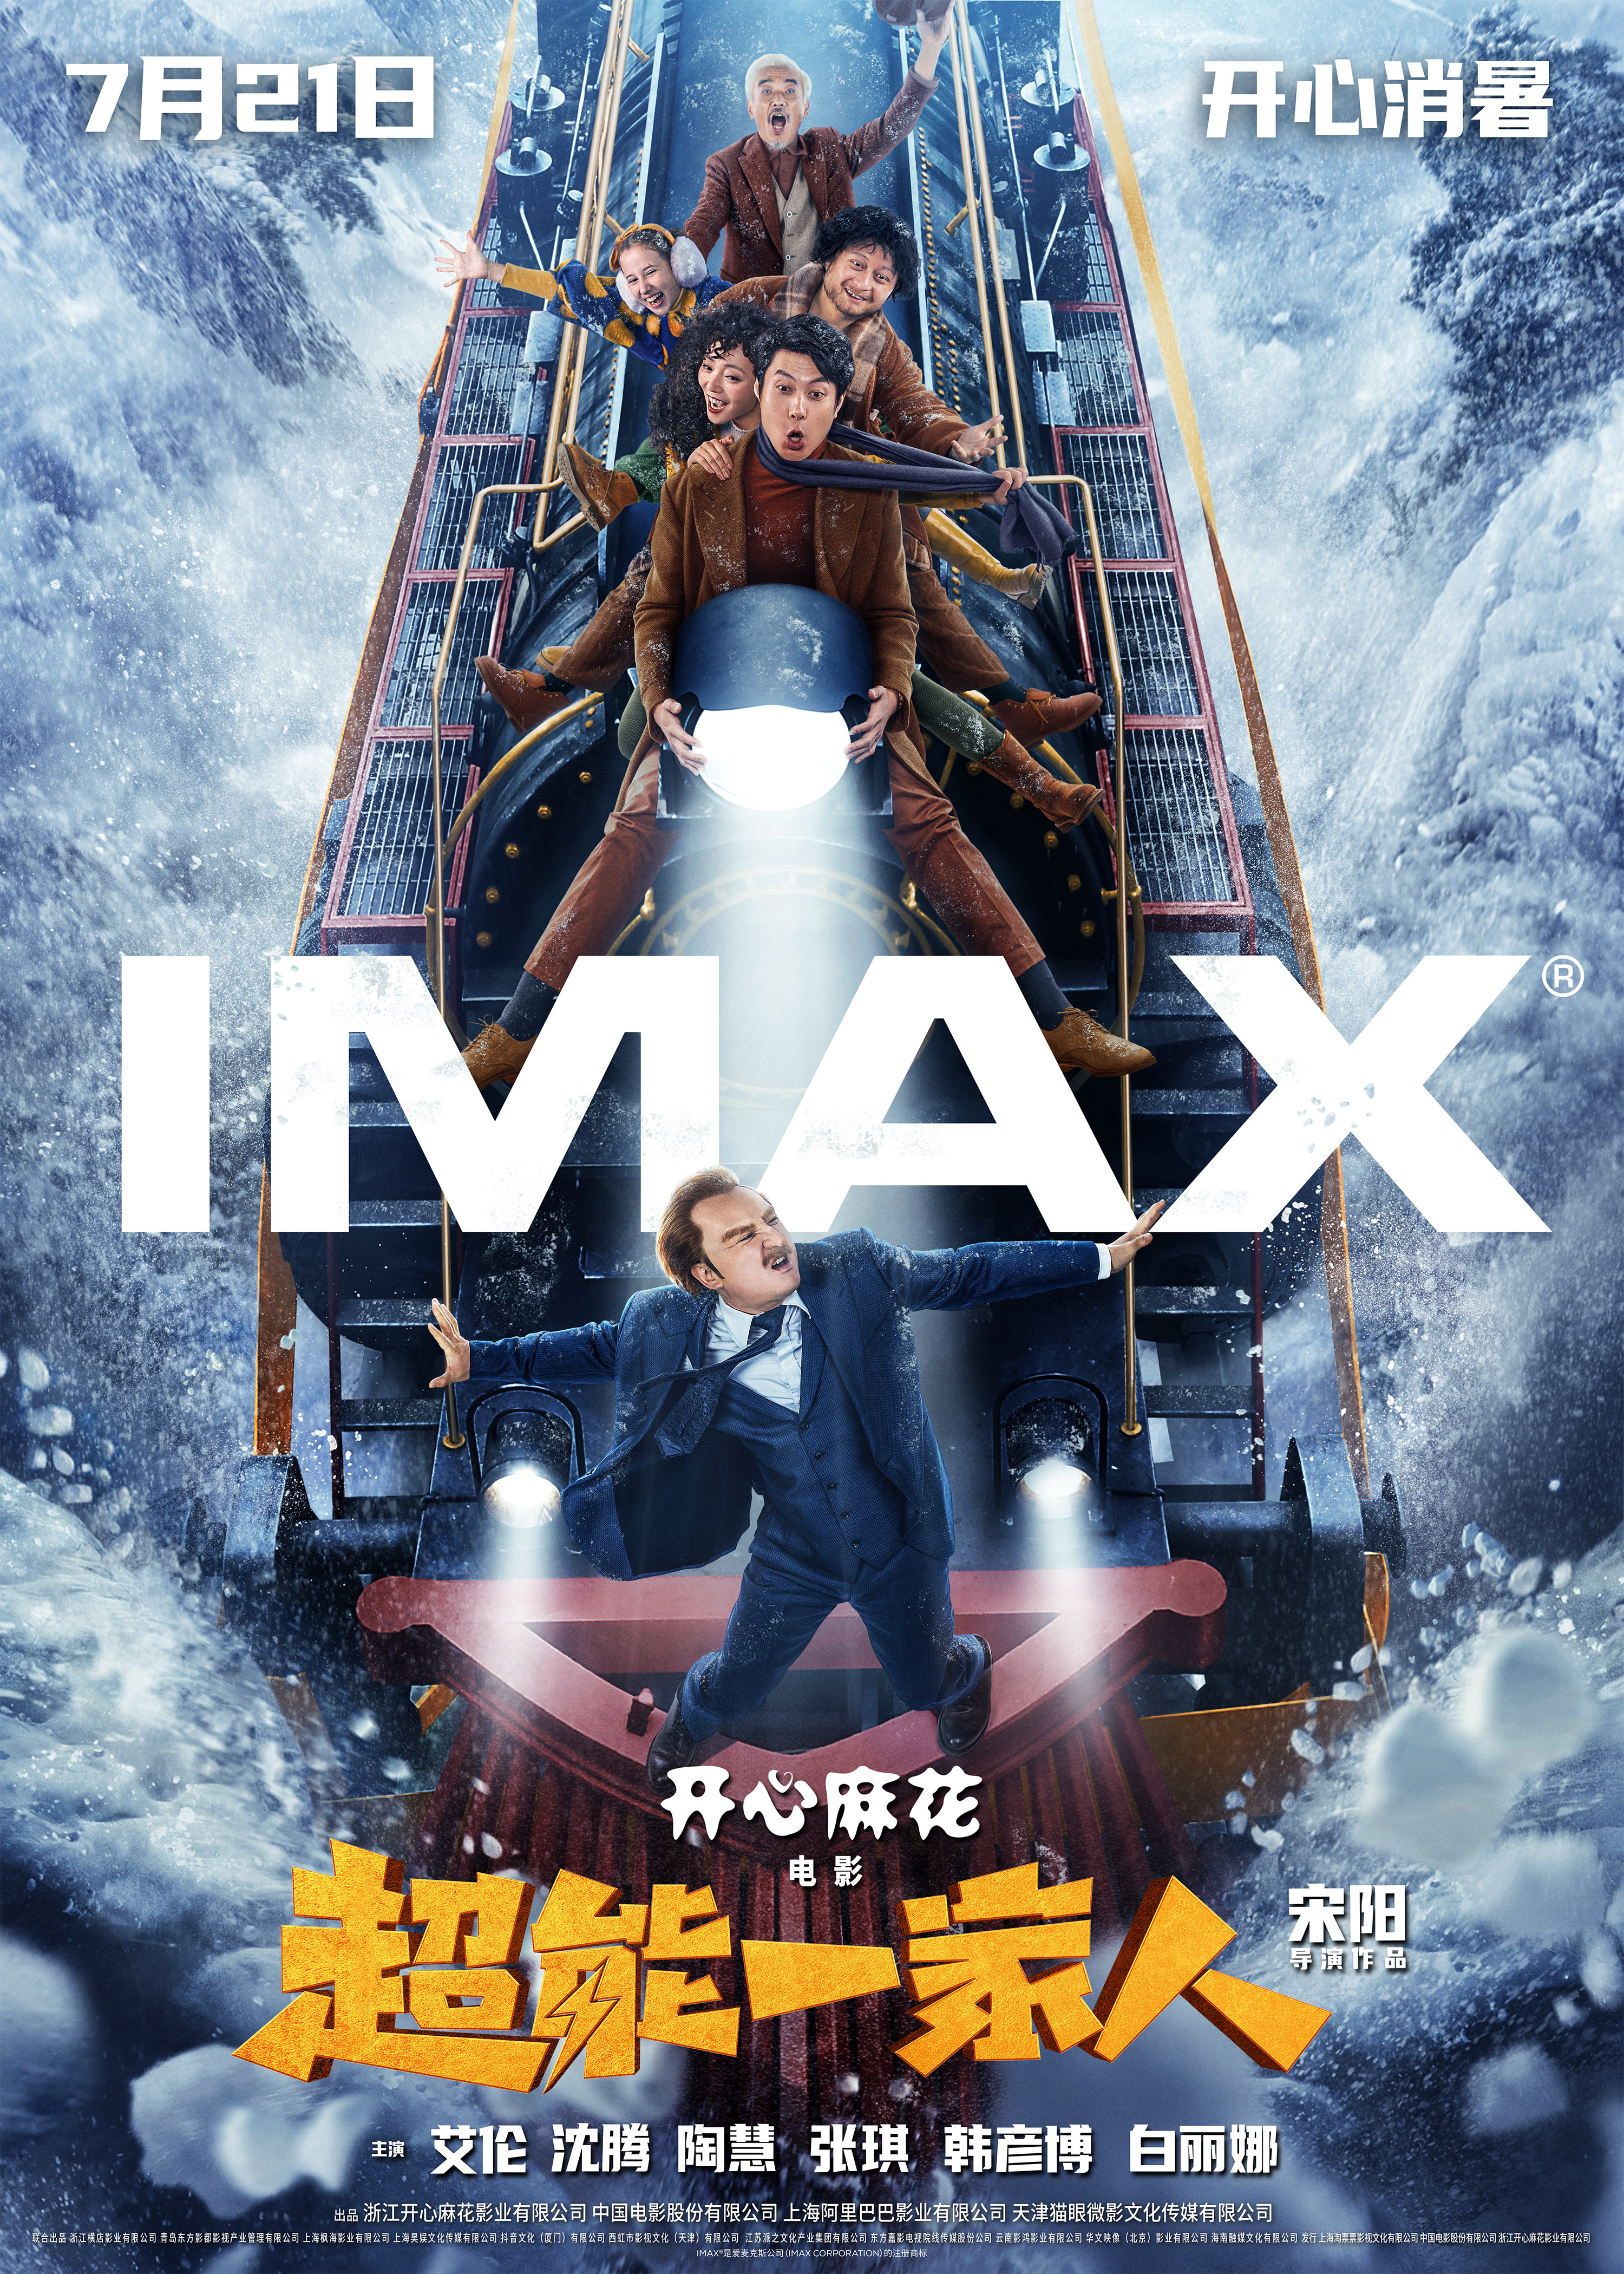 开心麻花奇幻喜剧电影《超能一家人》将于7月21日登陆IMAX®影院